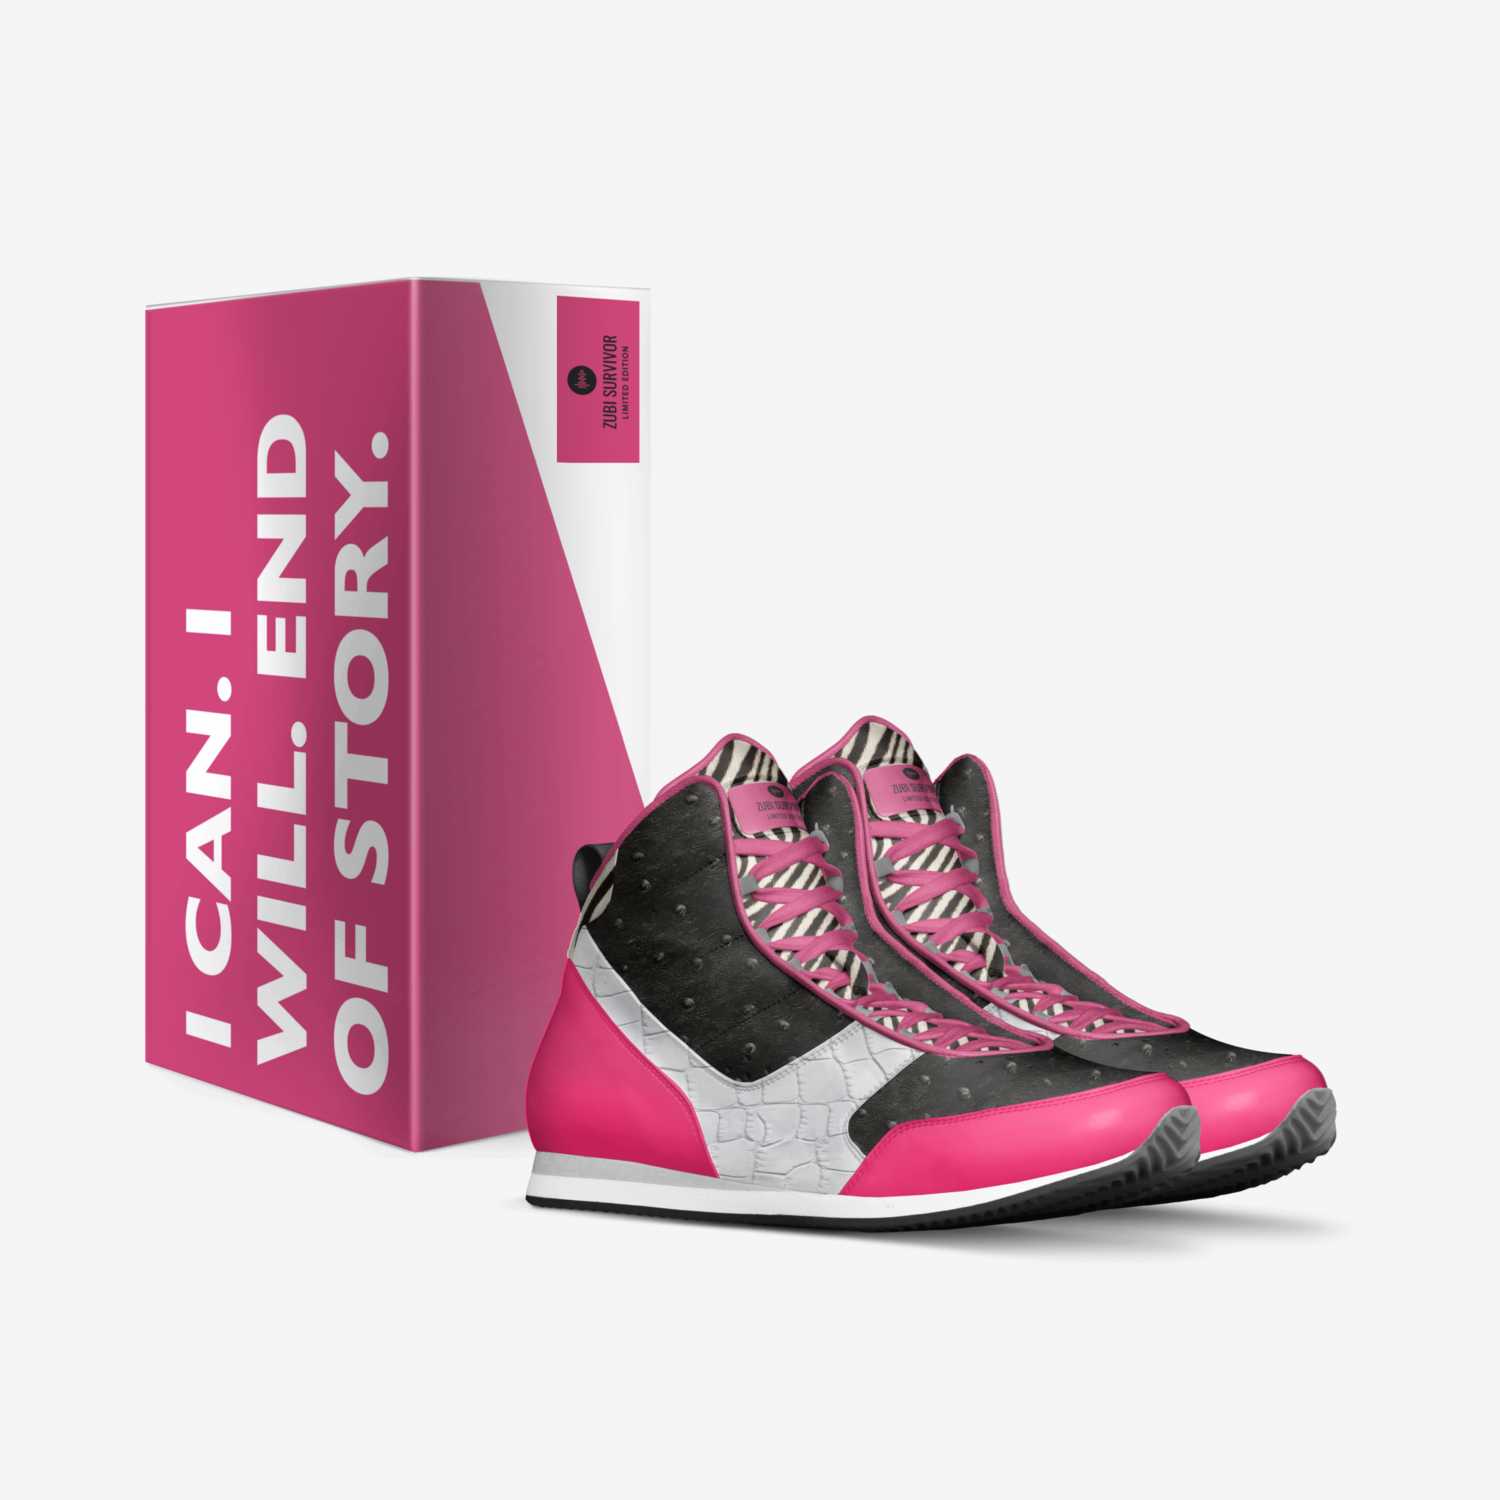 ZUBI SURVIVOR custom made in Italy shoes by Carlos Zubizarreta | Box view